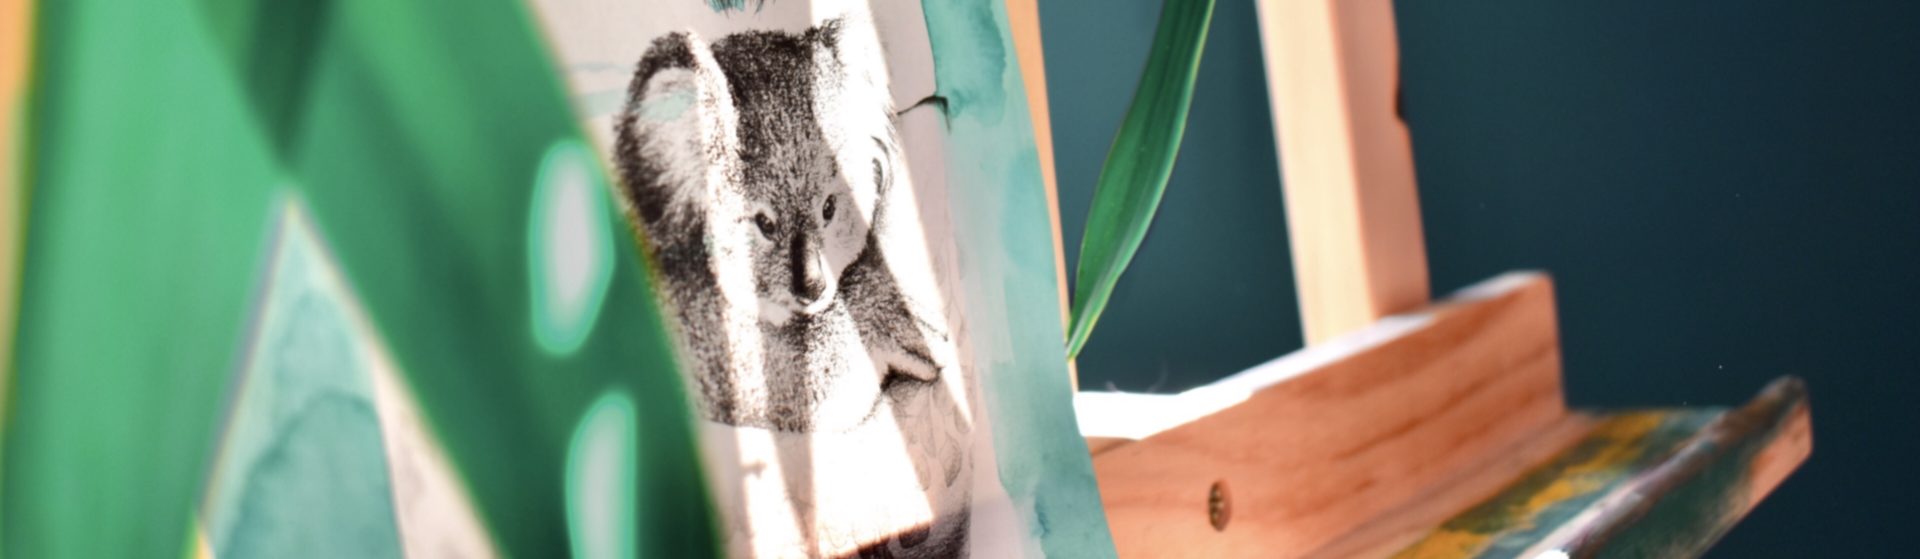 dessin au crayon d'un koala dans les bras d'une jeune femme qui le protège; le dessin est posé sur un chevalet en bois, contre une plante verte sur un fond bleu-vert sombre